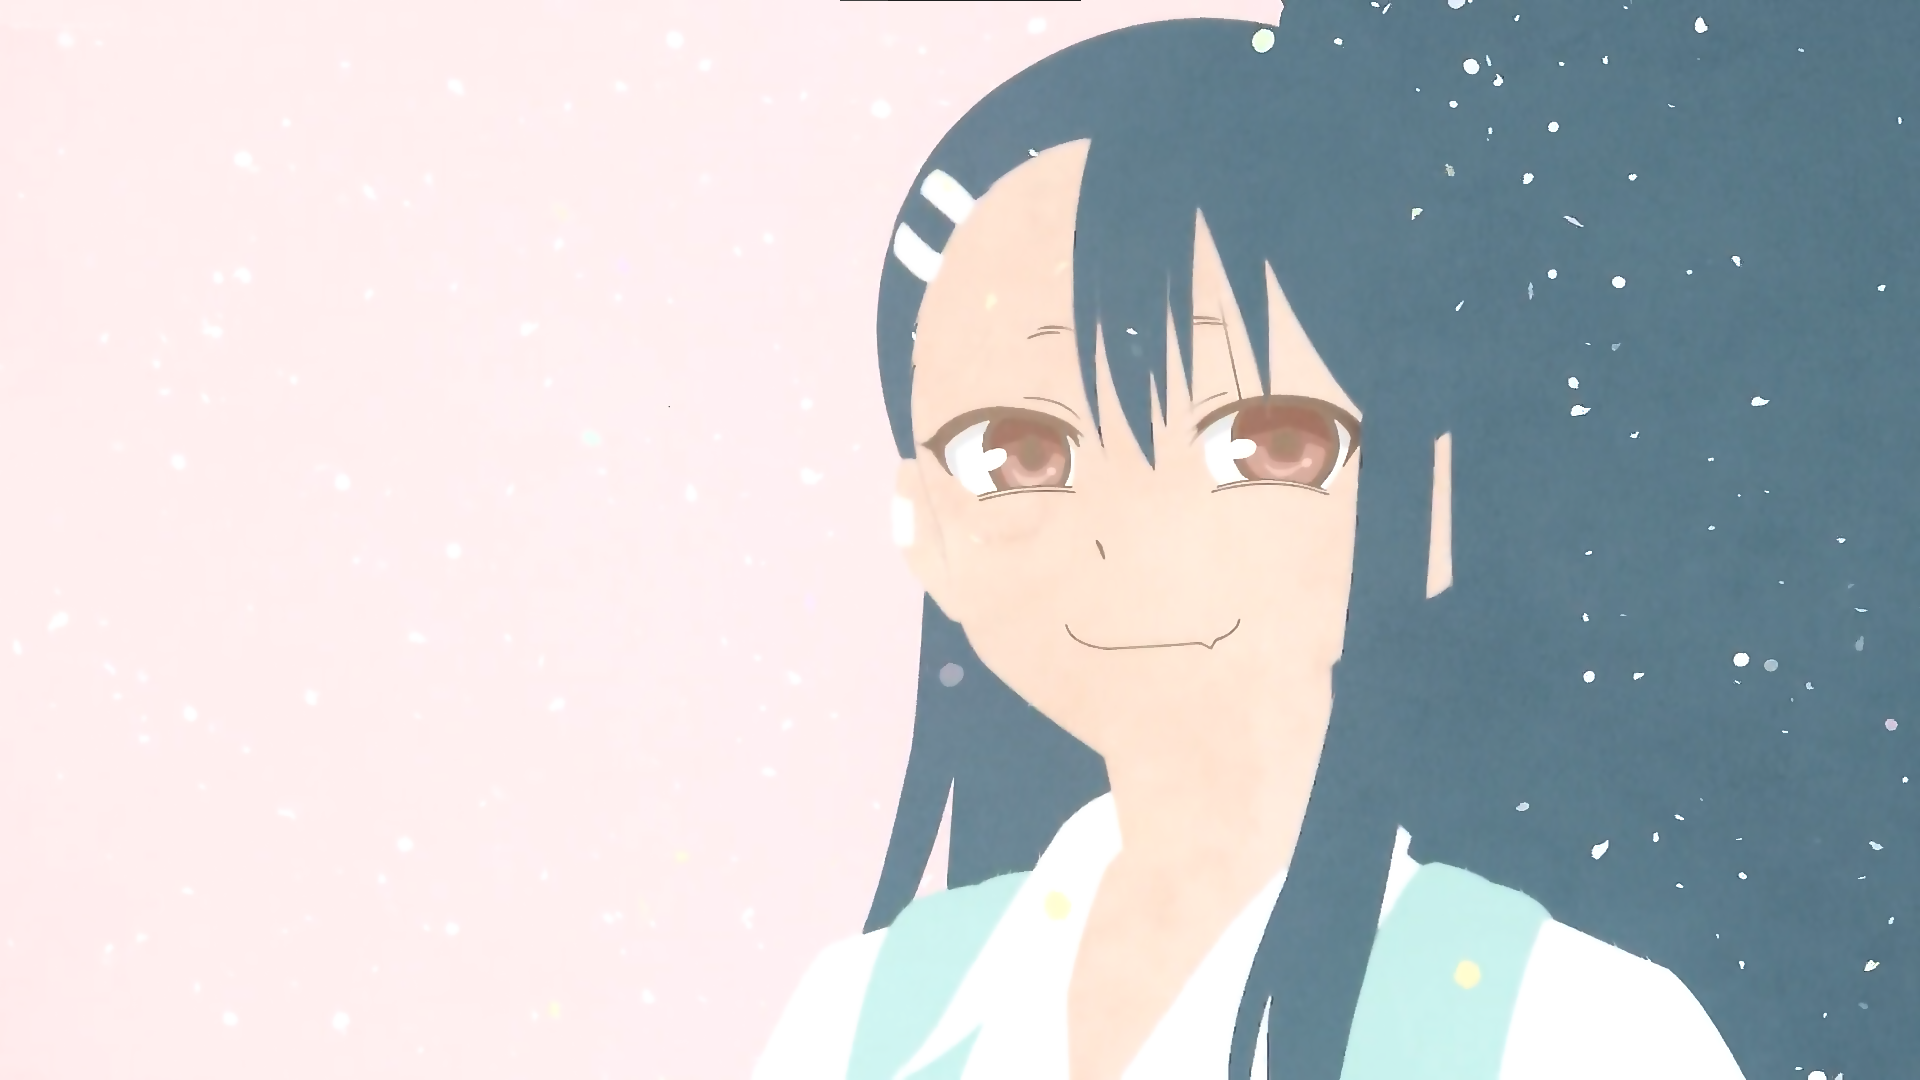 Hayase nagatoro anime girl on colored background